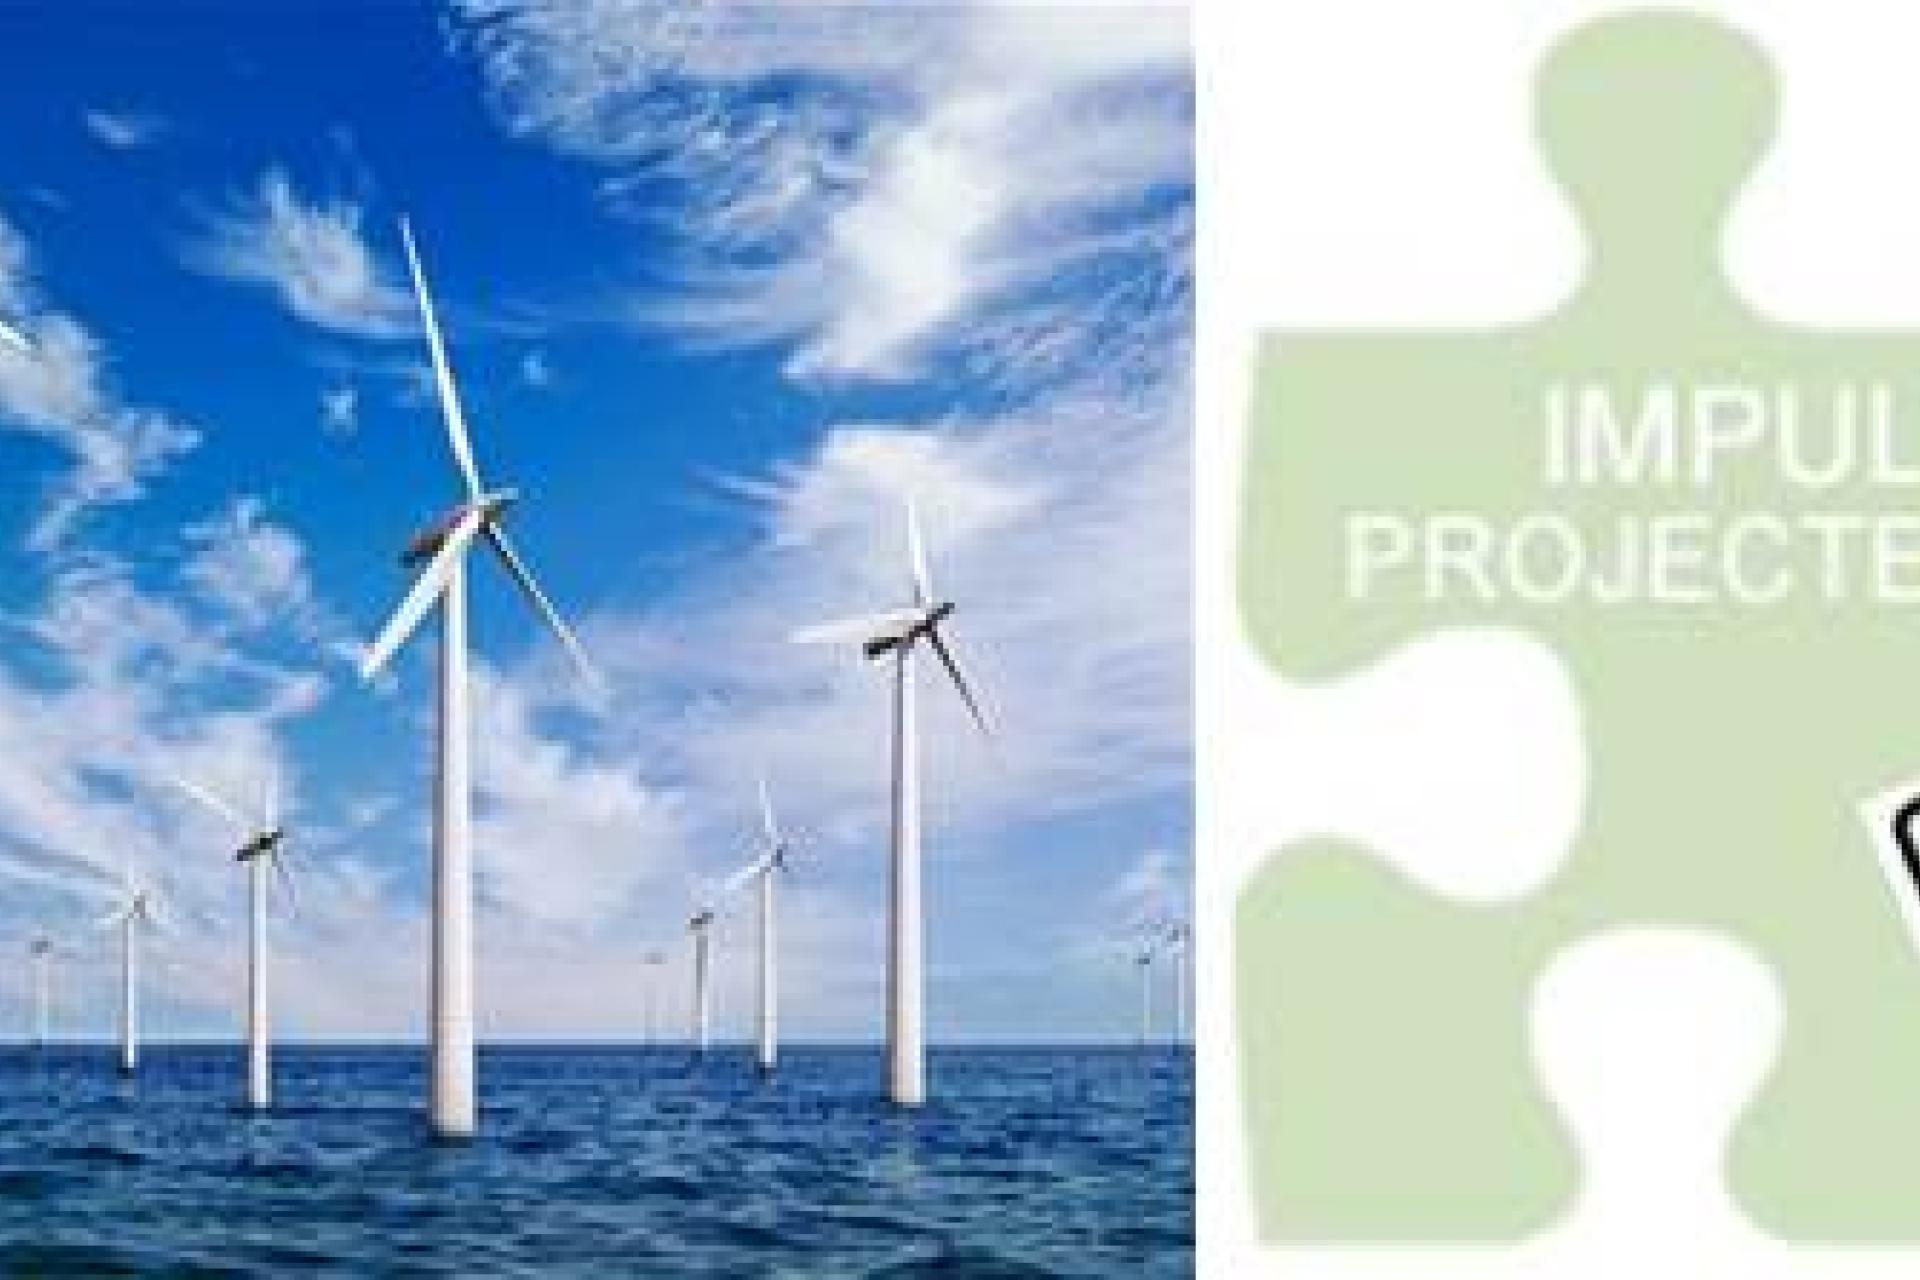 Foto van windmolens in zee en het logo van impulsprojecten